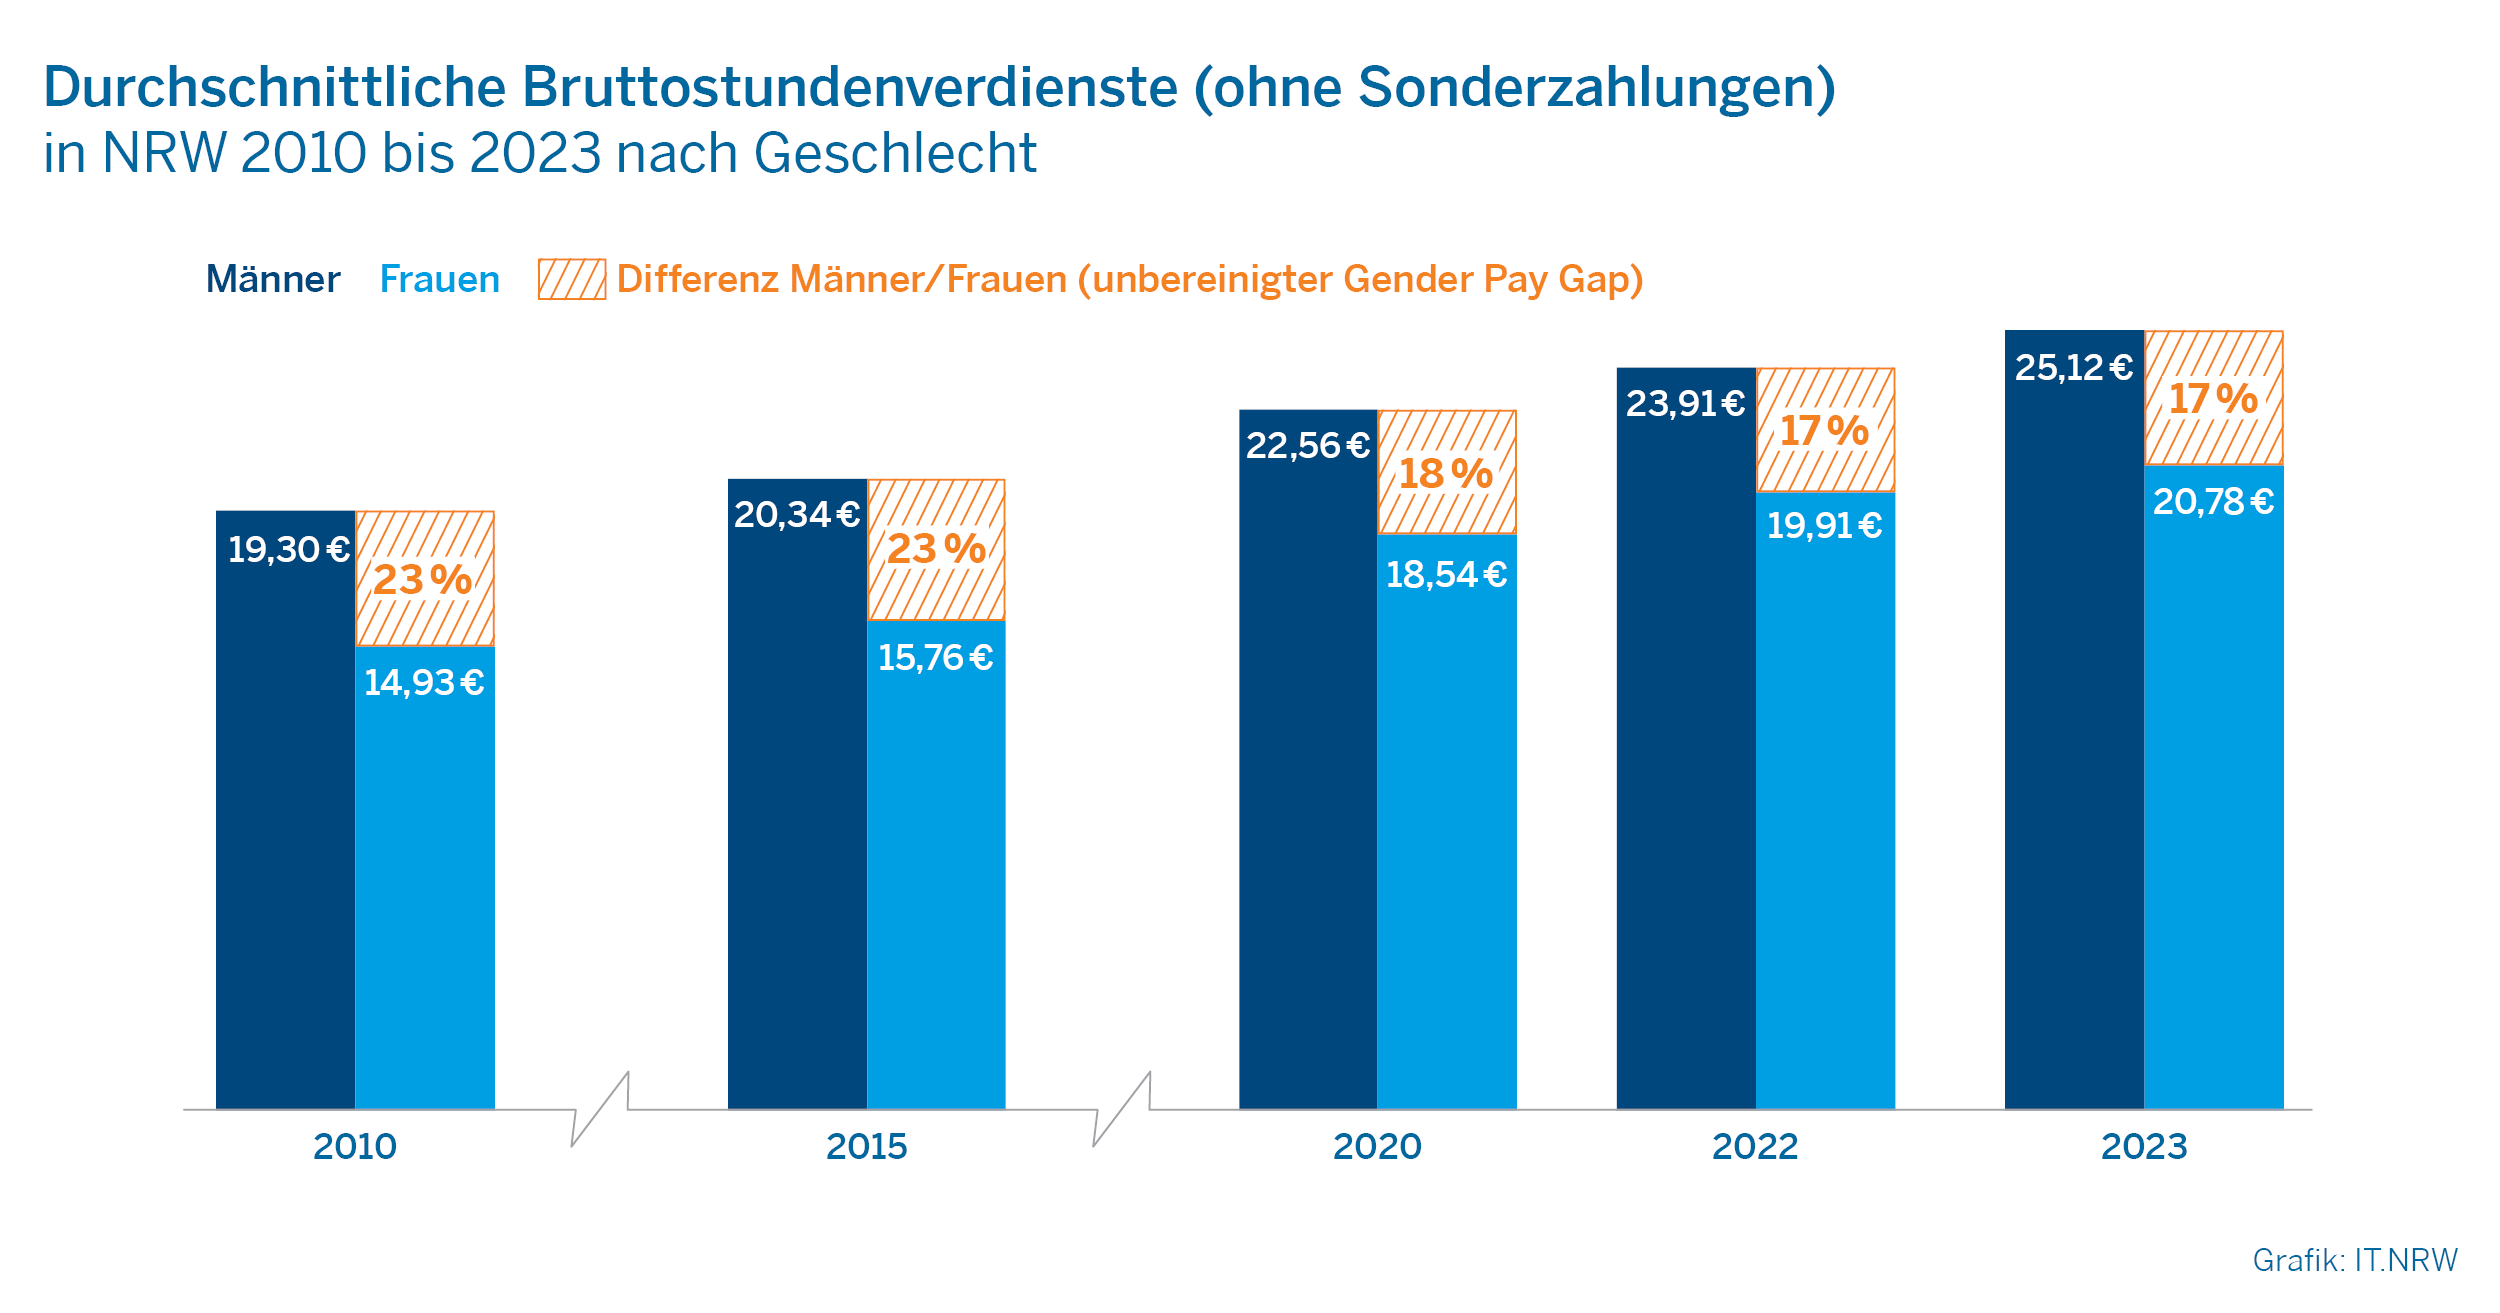 Durchschnittliche Bruttostundenverdienste (ohne Sonderzahlungen) in NRW 2010 bis 2023 nach Geschlecht